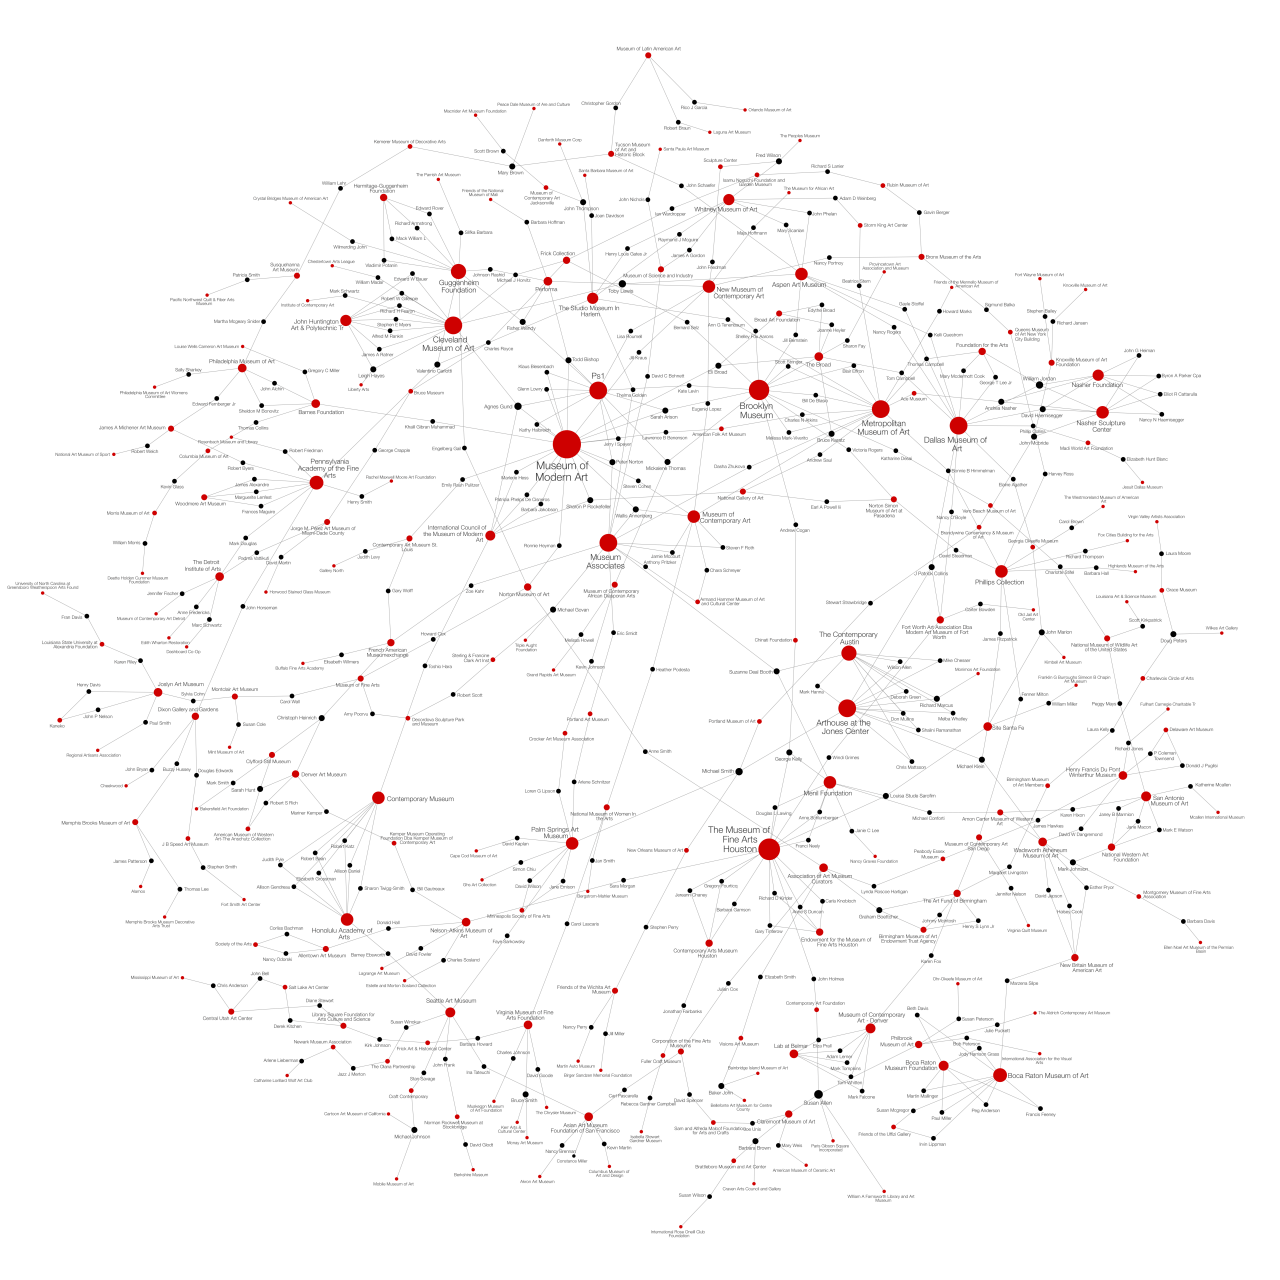 Netzwerk von Kunstgalerien und deren Vorstandsmitgliedern, dargestellt durch rote und schwarze Punkte in verschiedenen Größen, die durch Linien verbunden sind